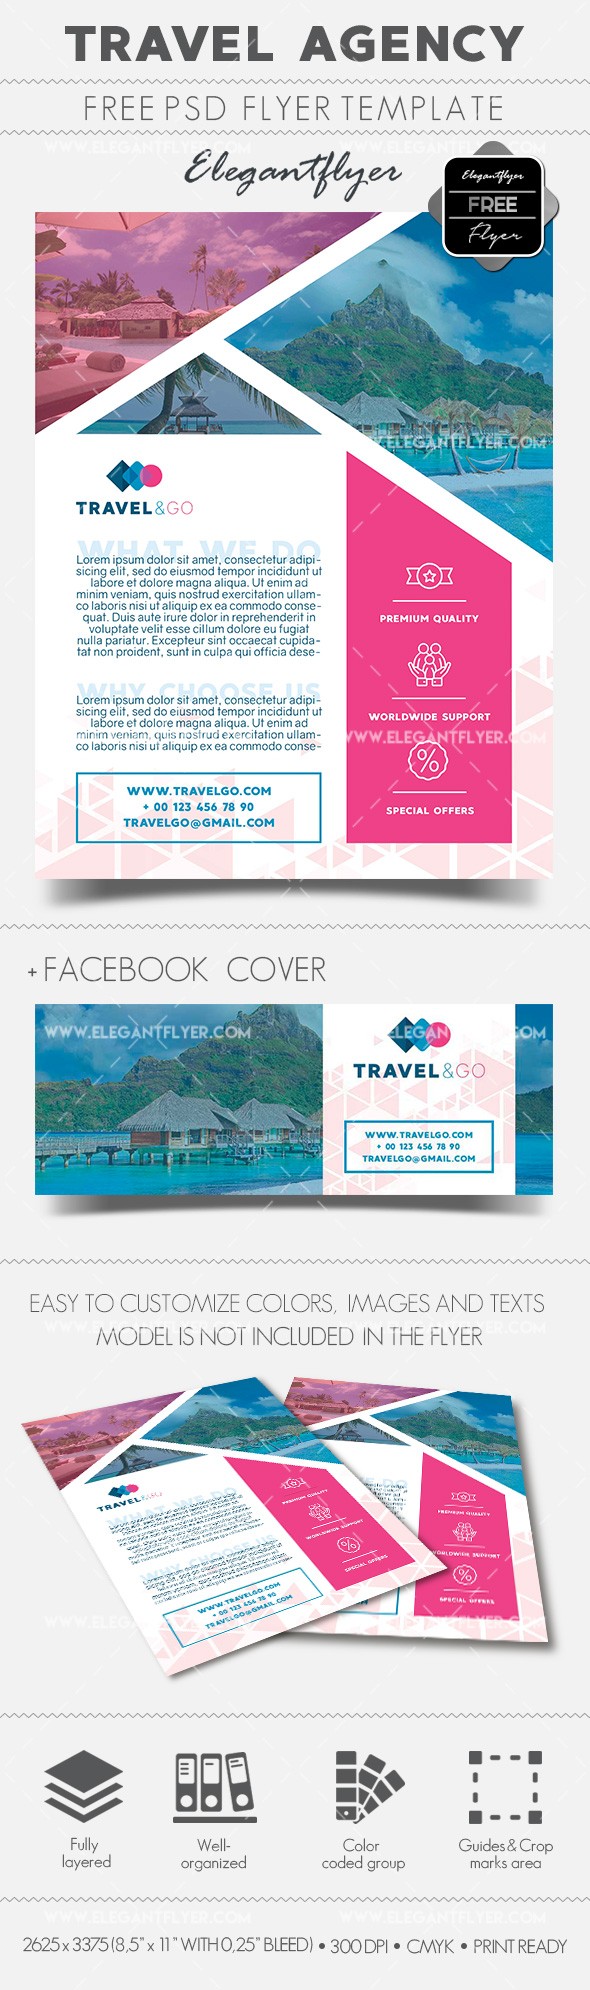 Travel Agency Flyer by ElegantFlyer